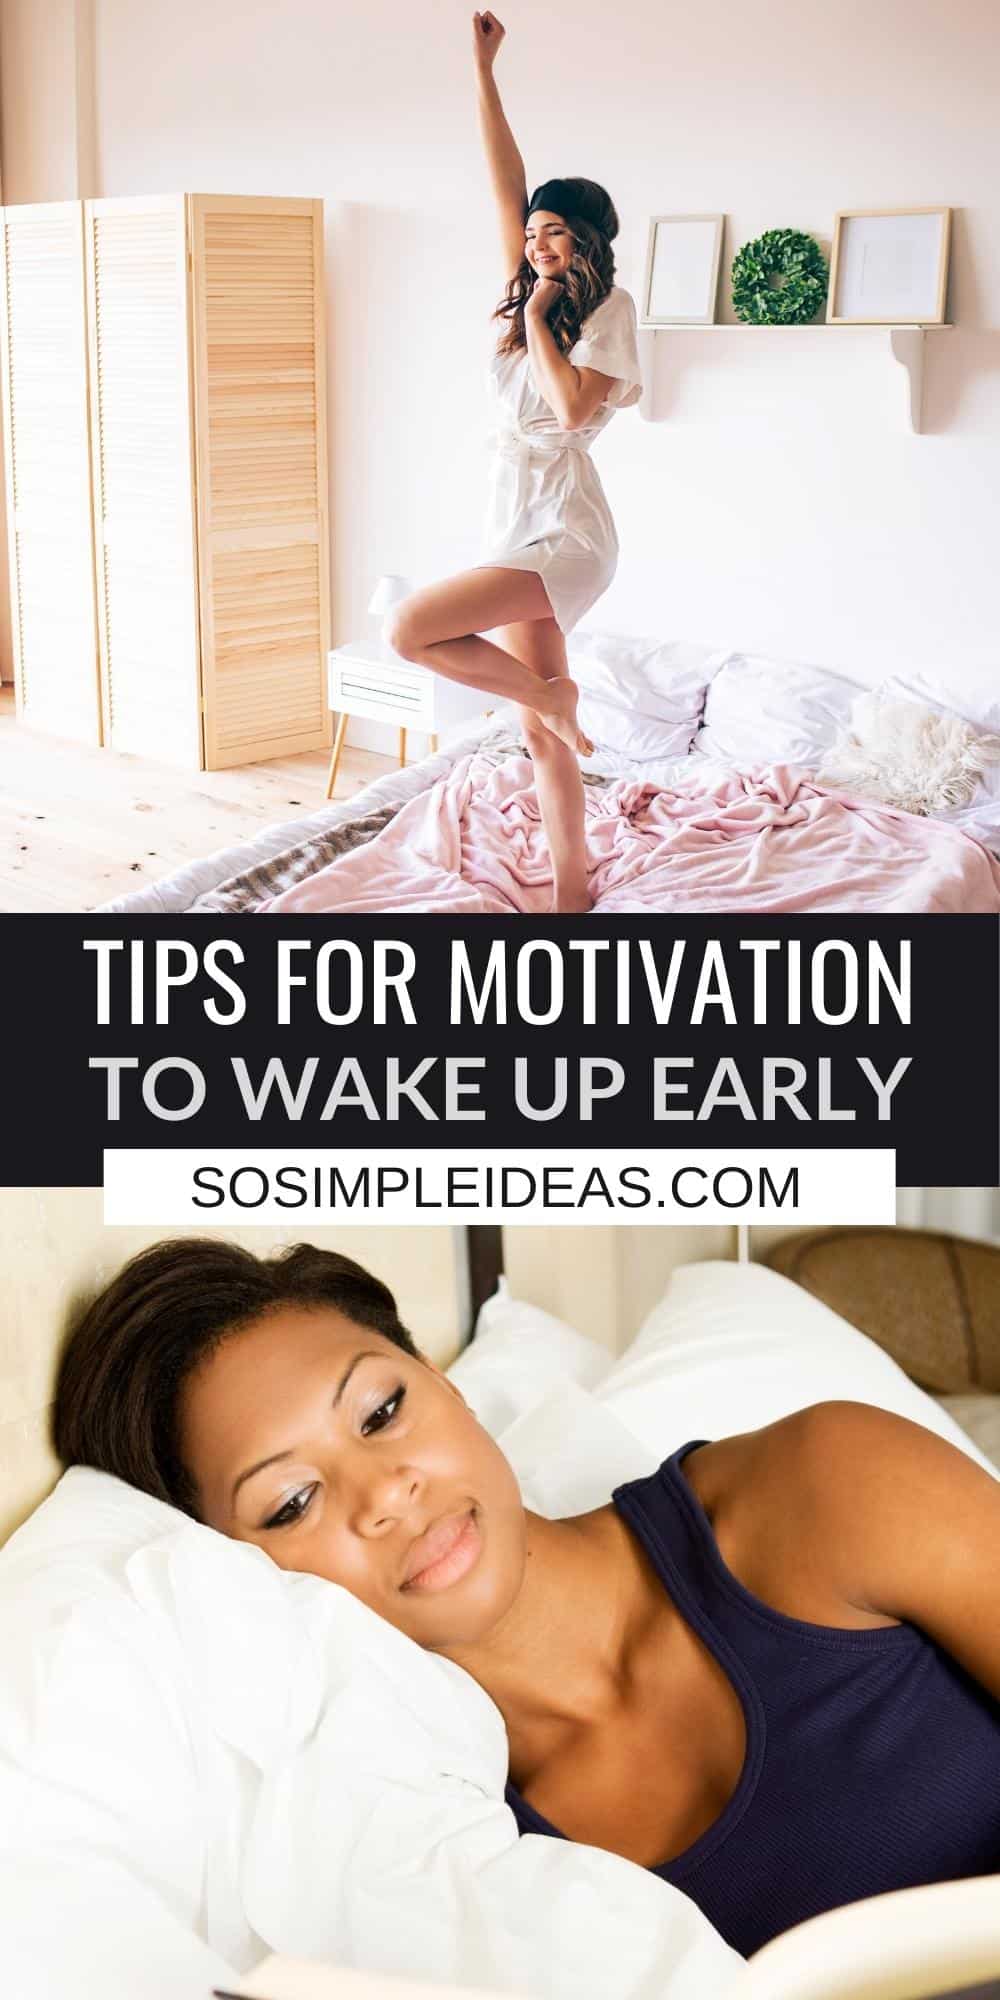 motivation to wake up early pinterest image.